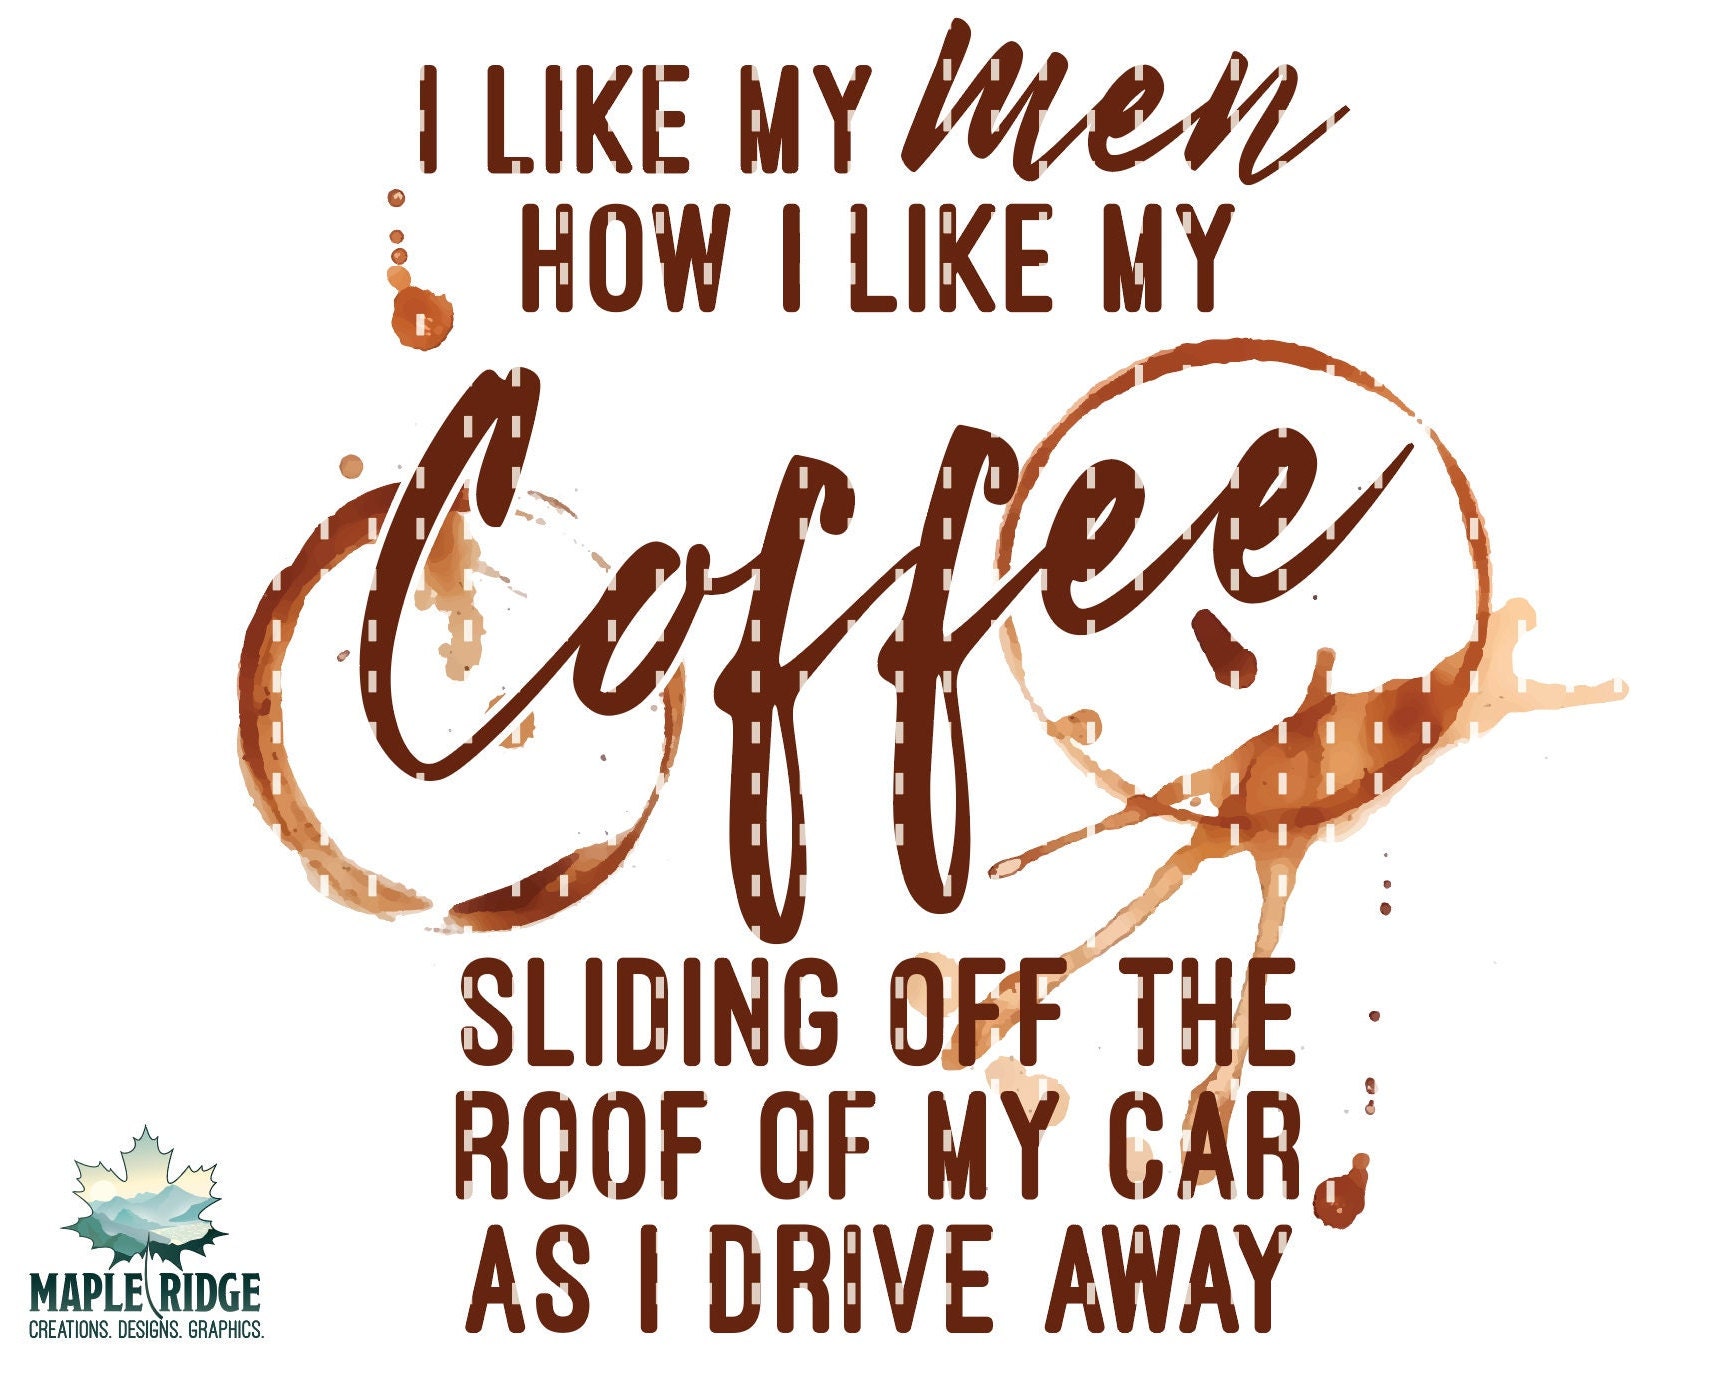 I Like My Men Like I Like My Coffee. Sliding Off The Roof Of My